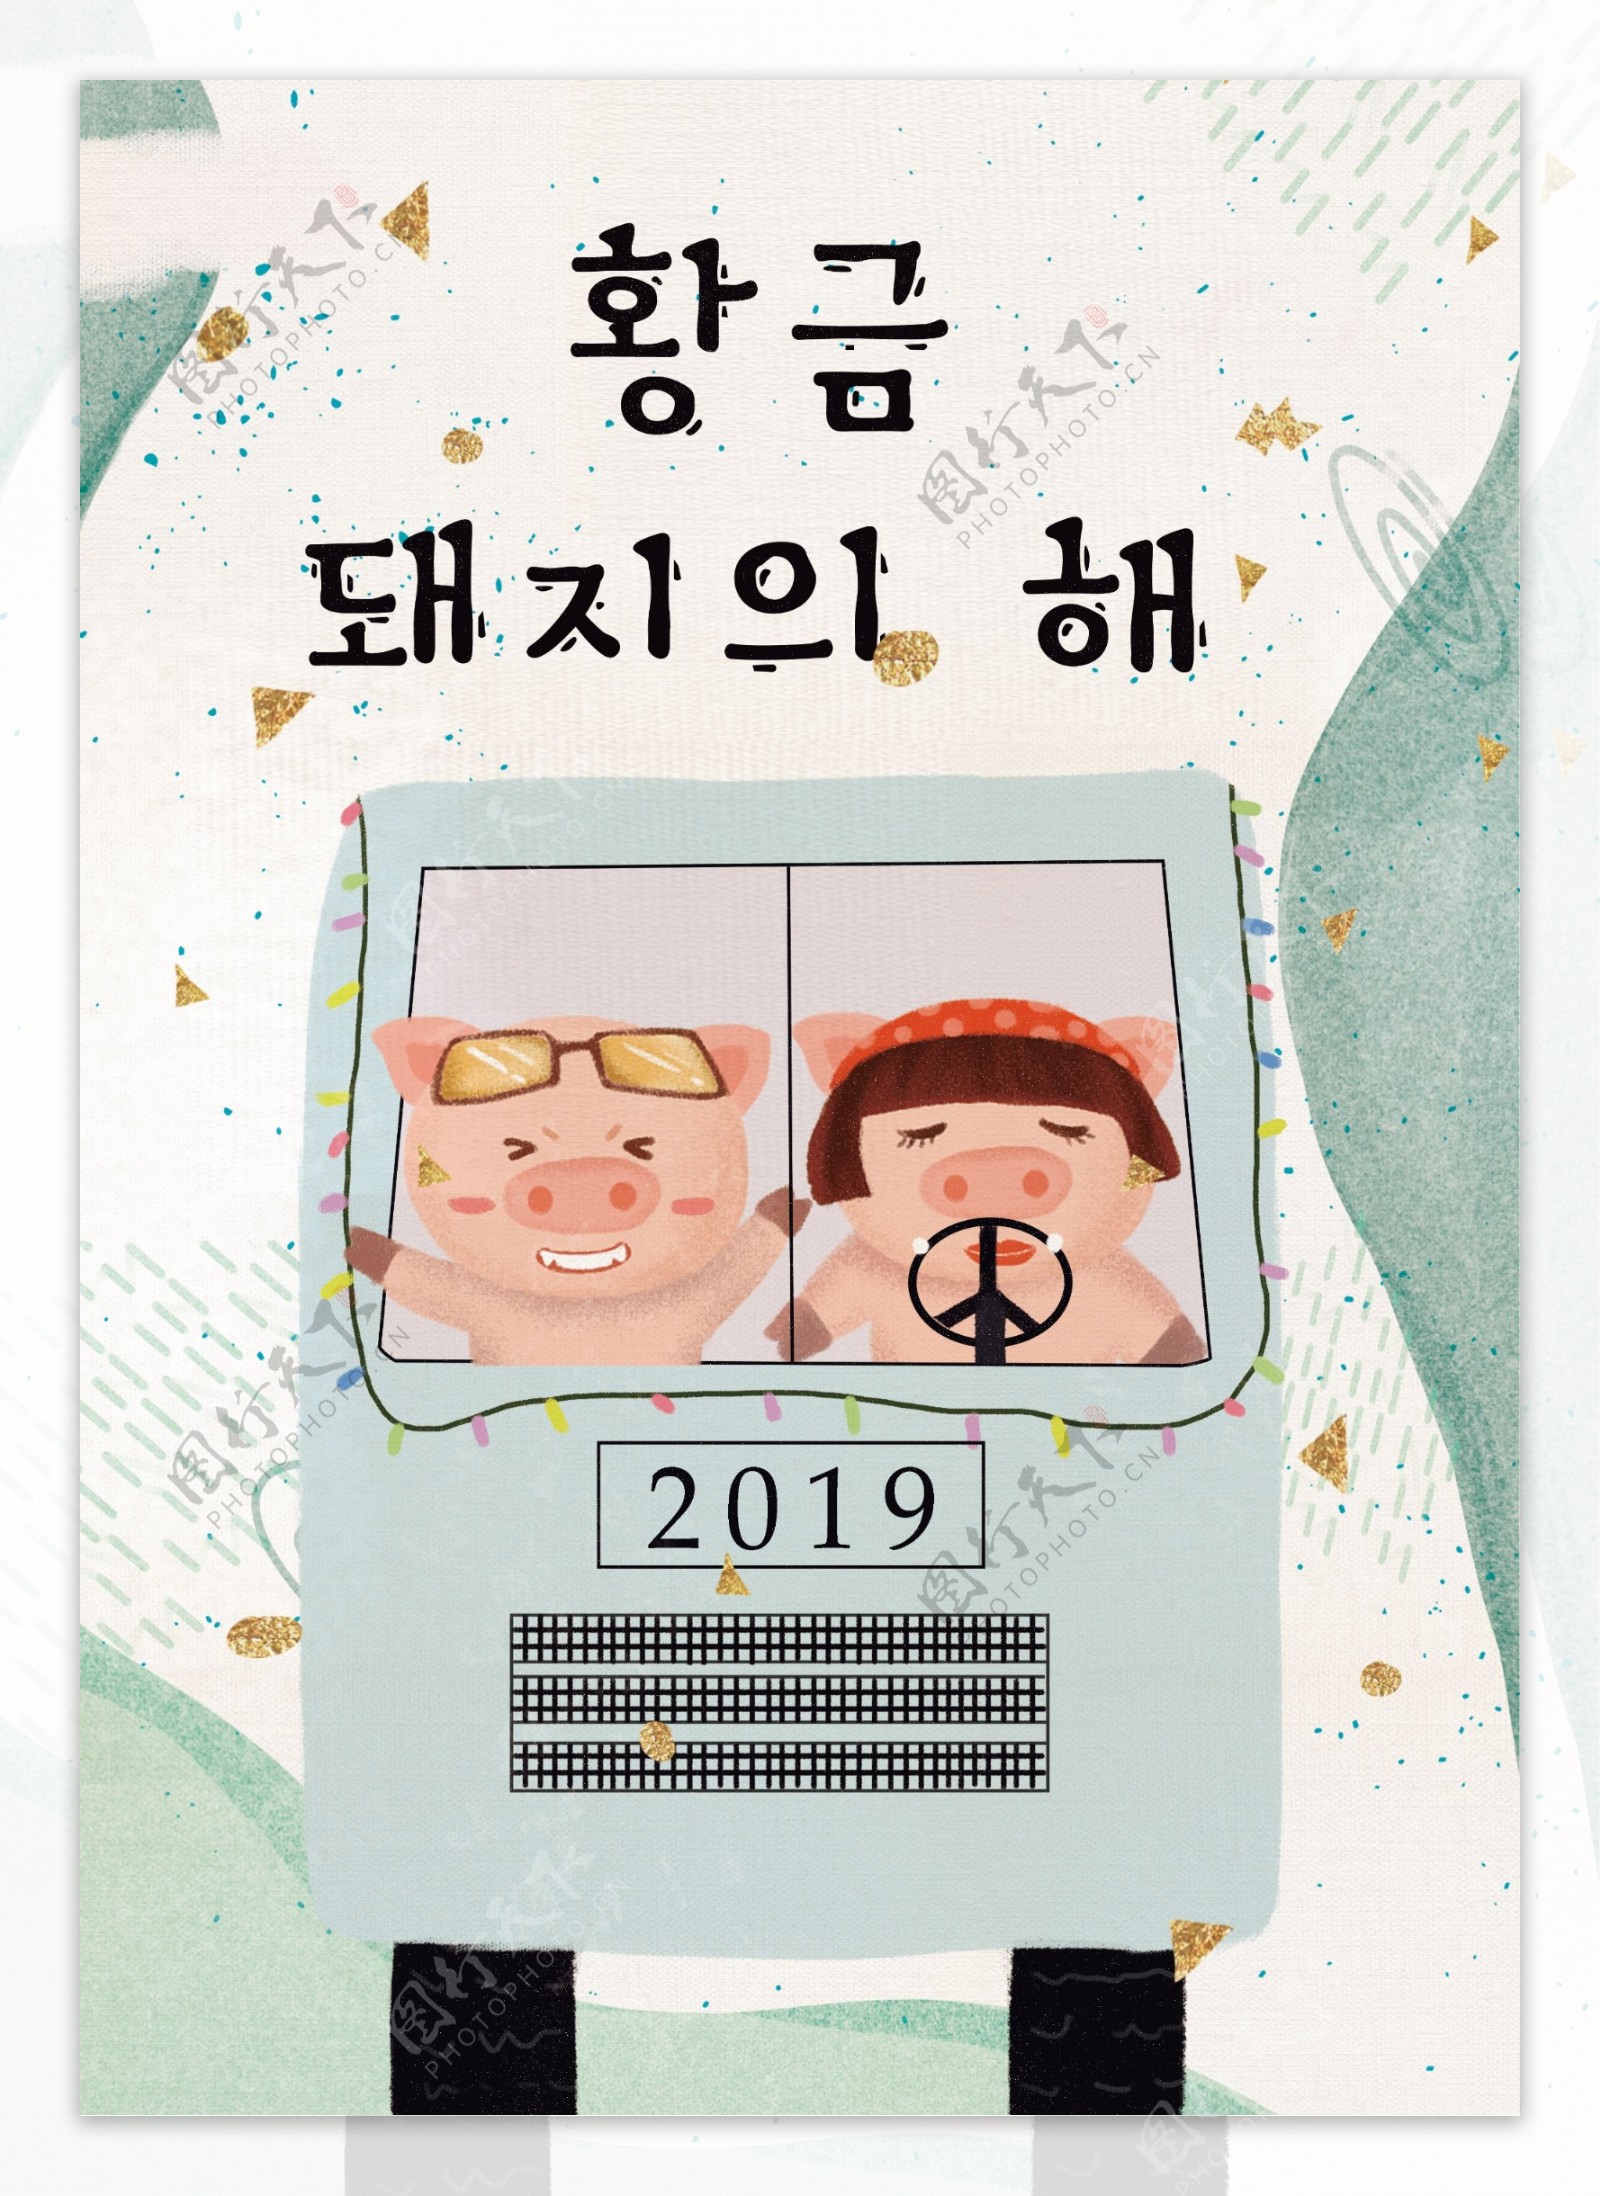 2019年新鲜的猪新年海报韩国风格